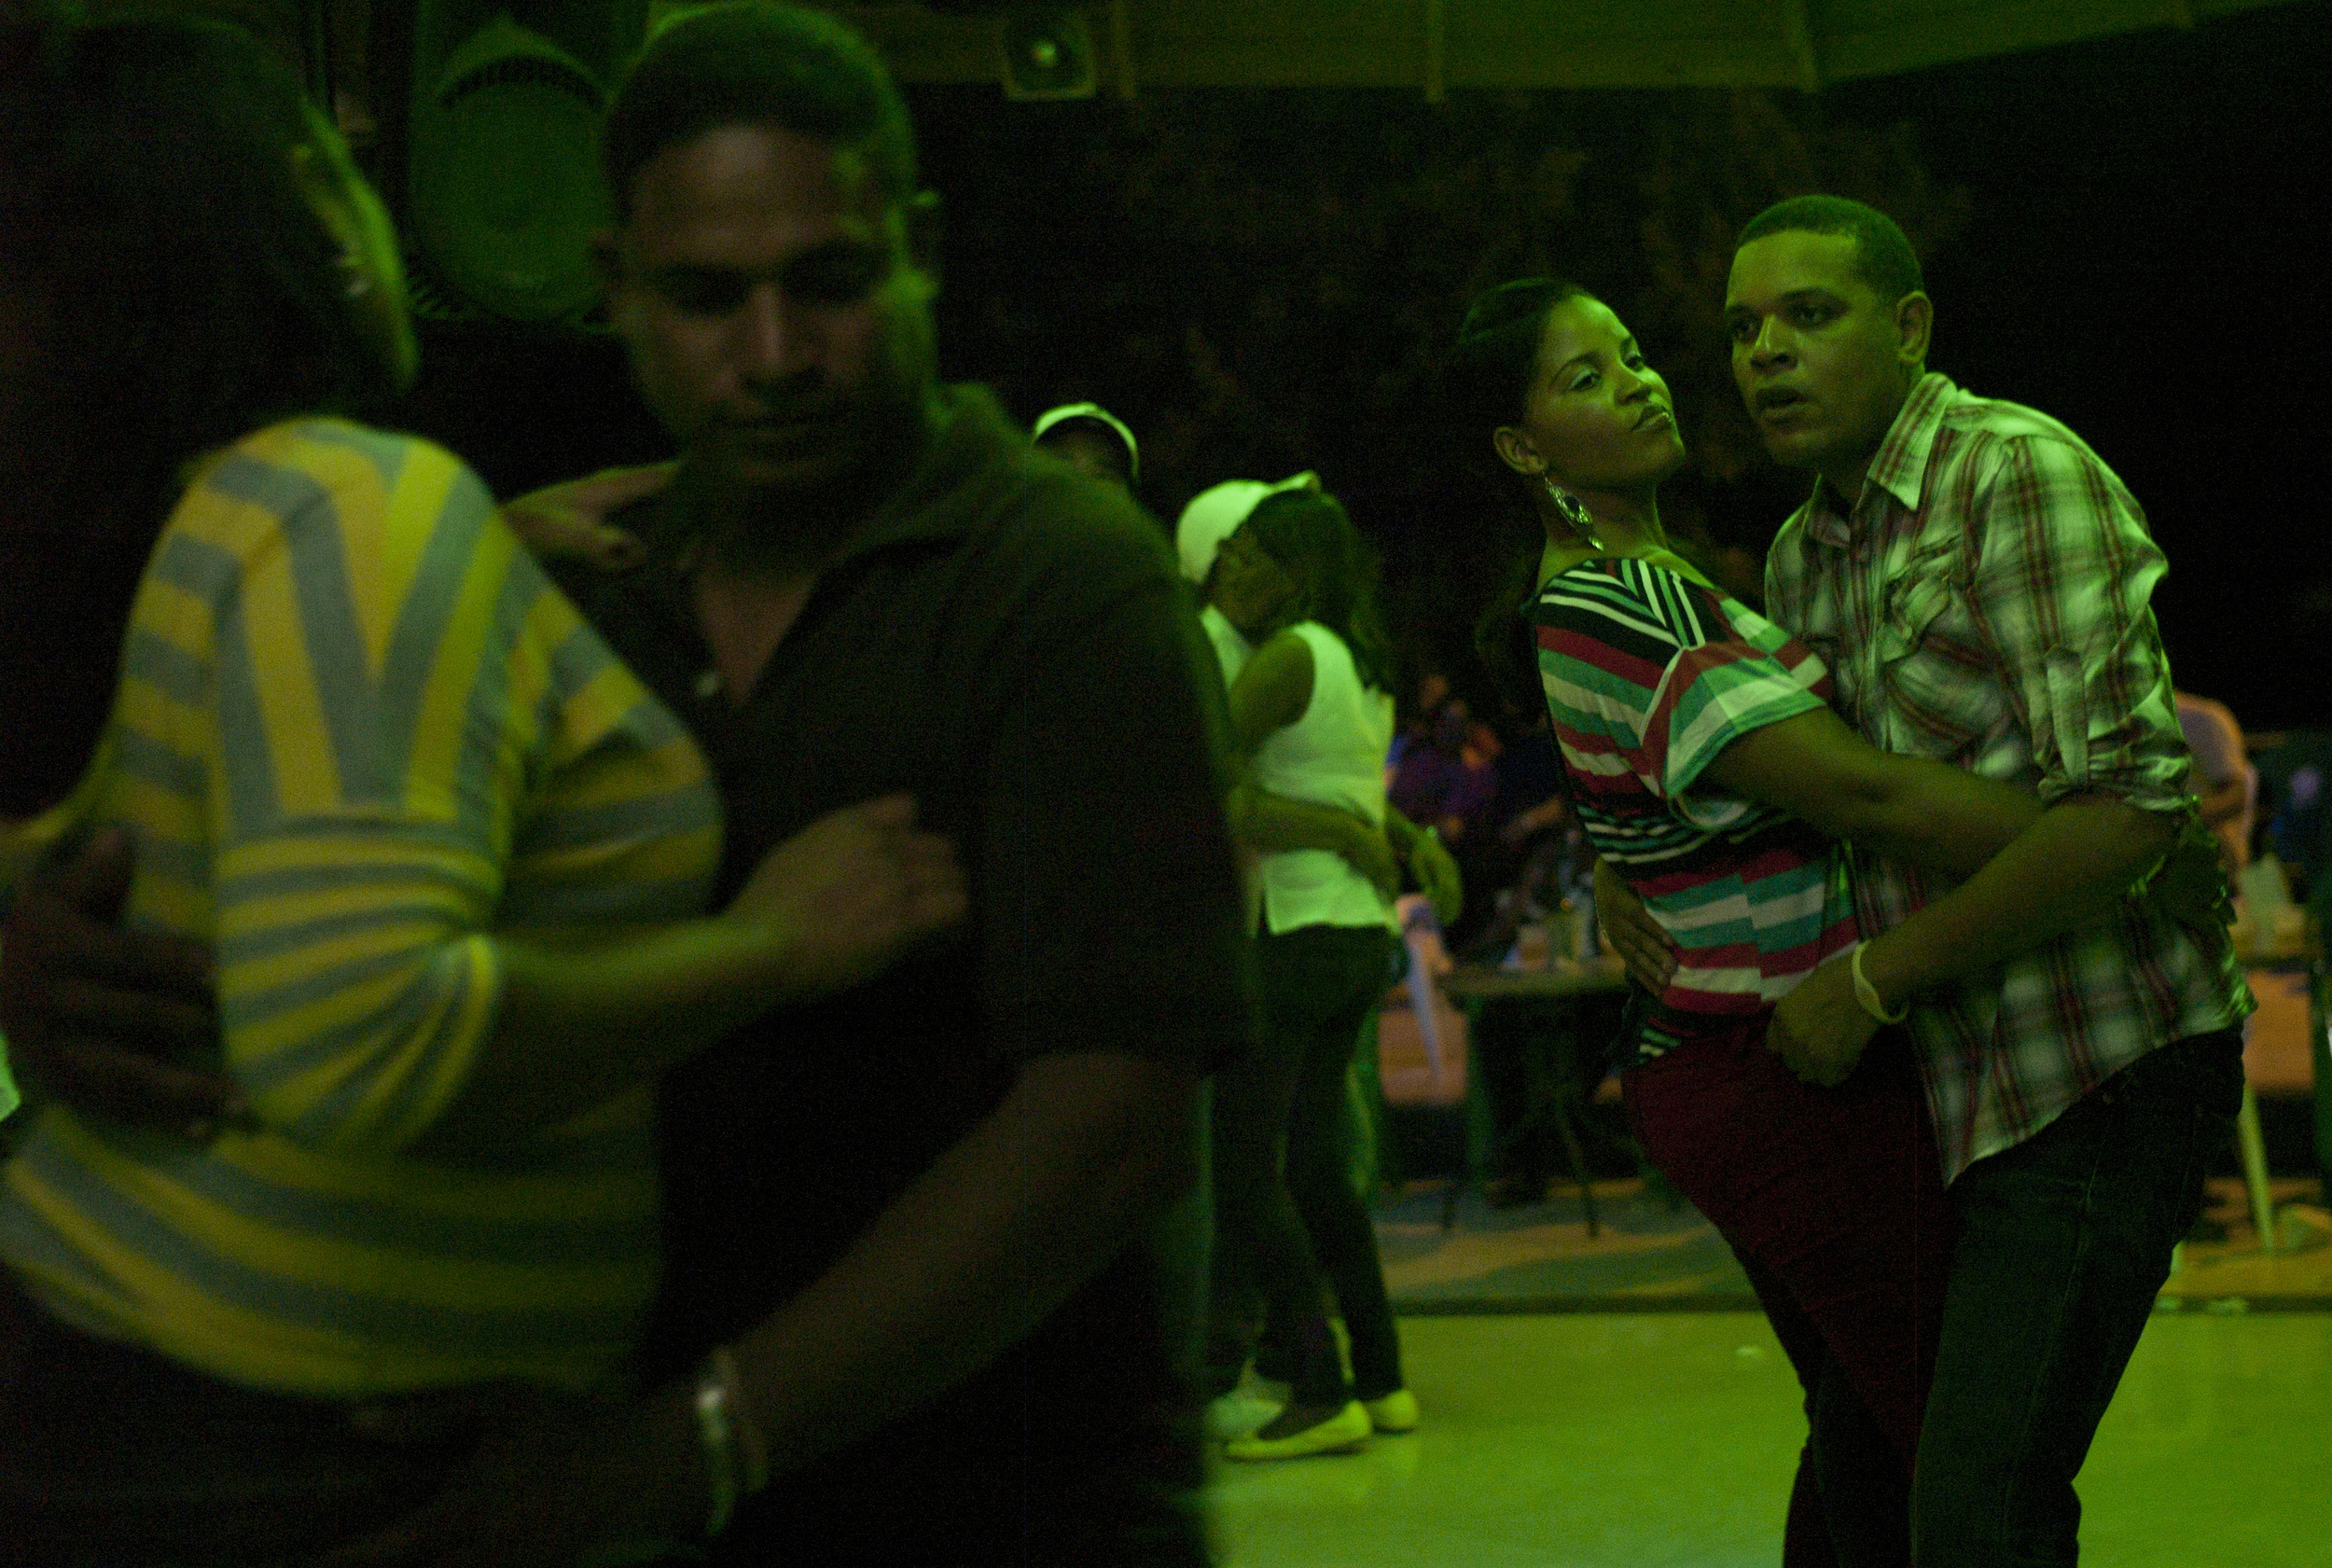  Dancing,&nbsp; Barahona, Dominican Republic.  